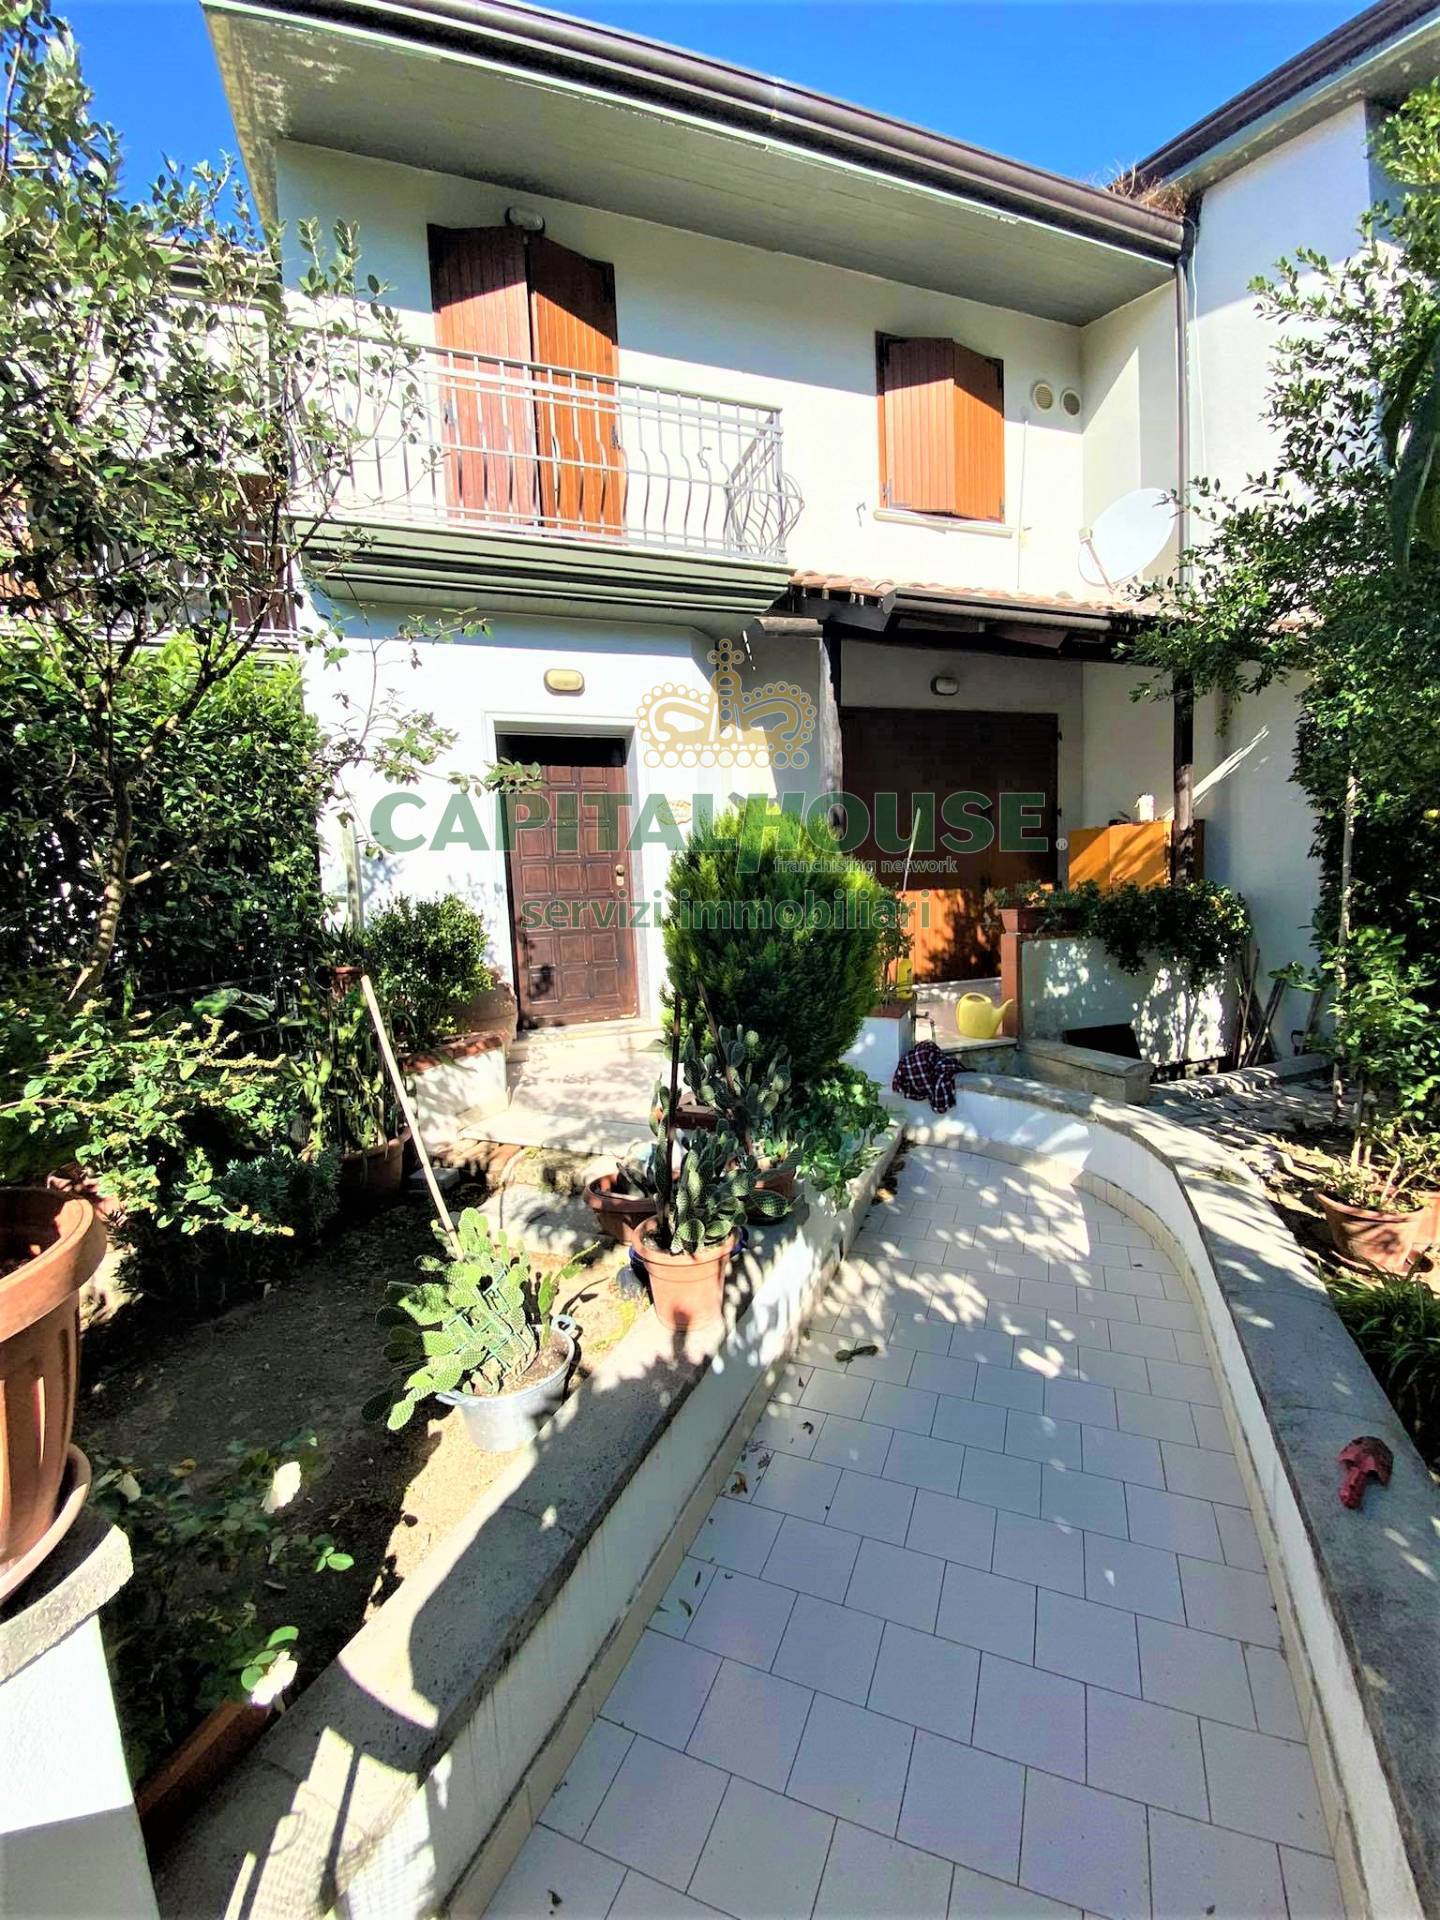 Villa a Schiera in vendita a Quadrelle, 5 locali, prezzo € 219.000 | PortaleAgenzieImmobiliari.it